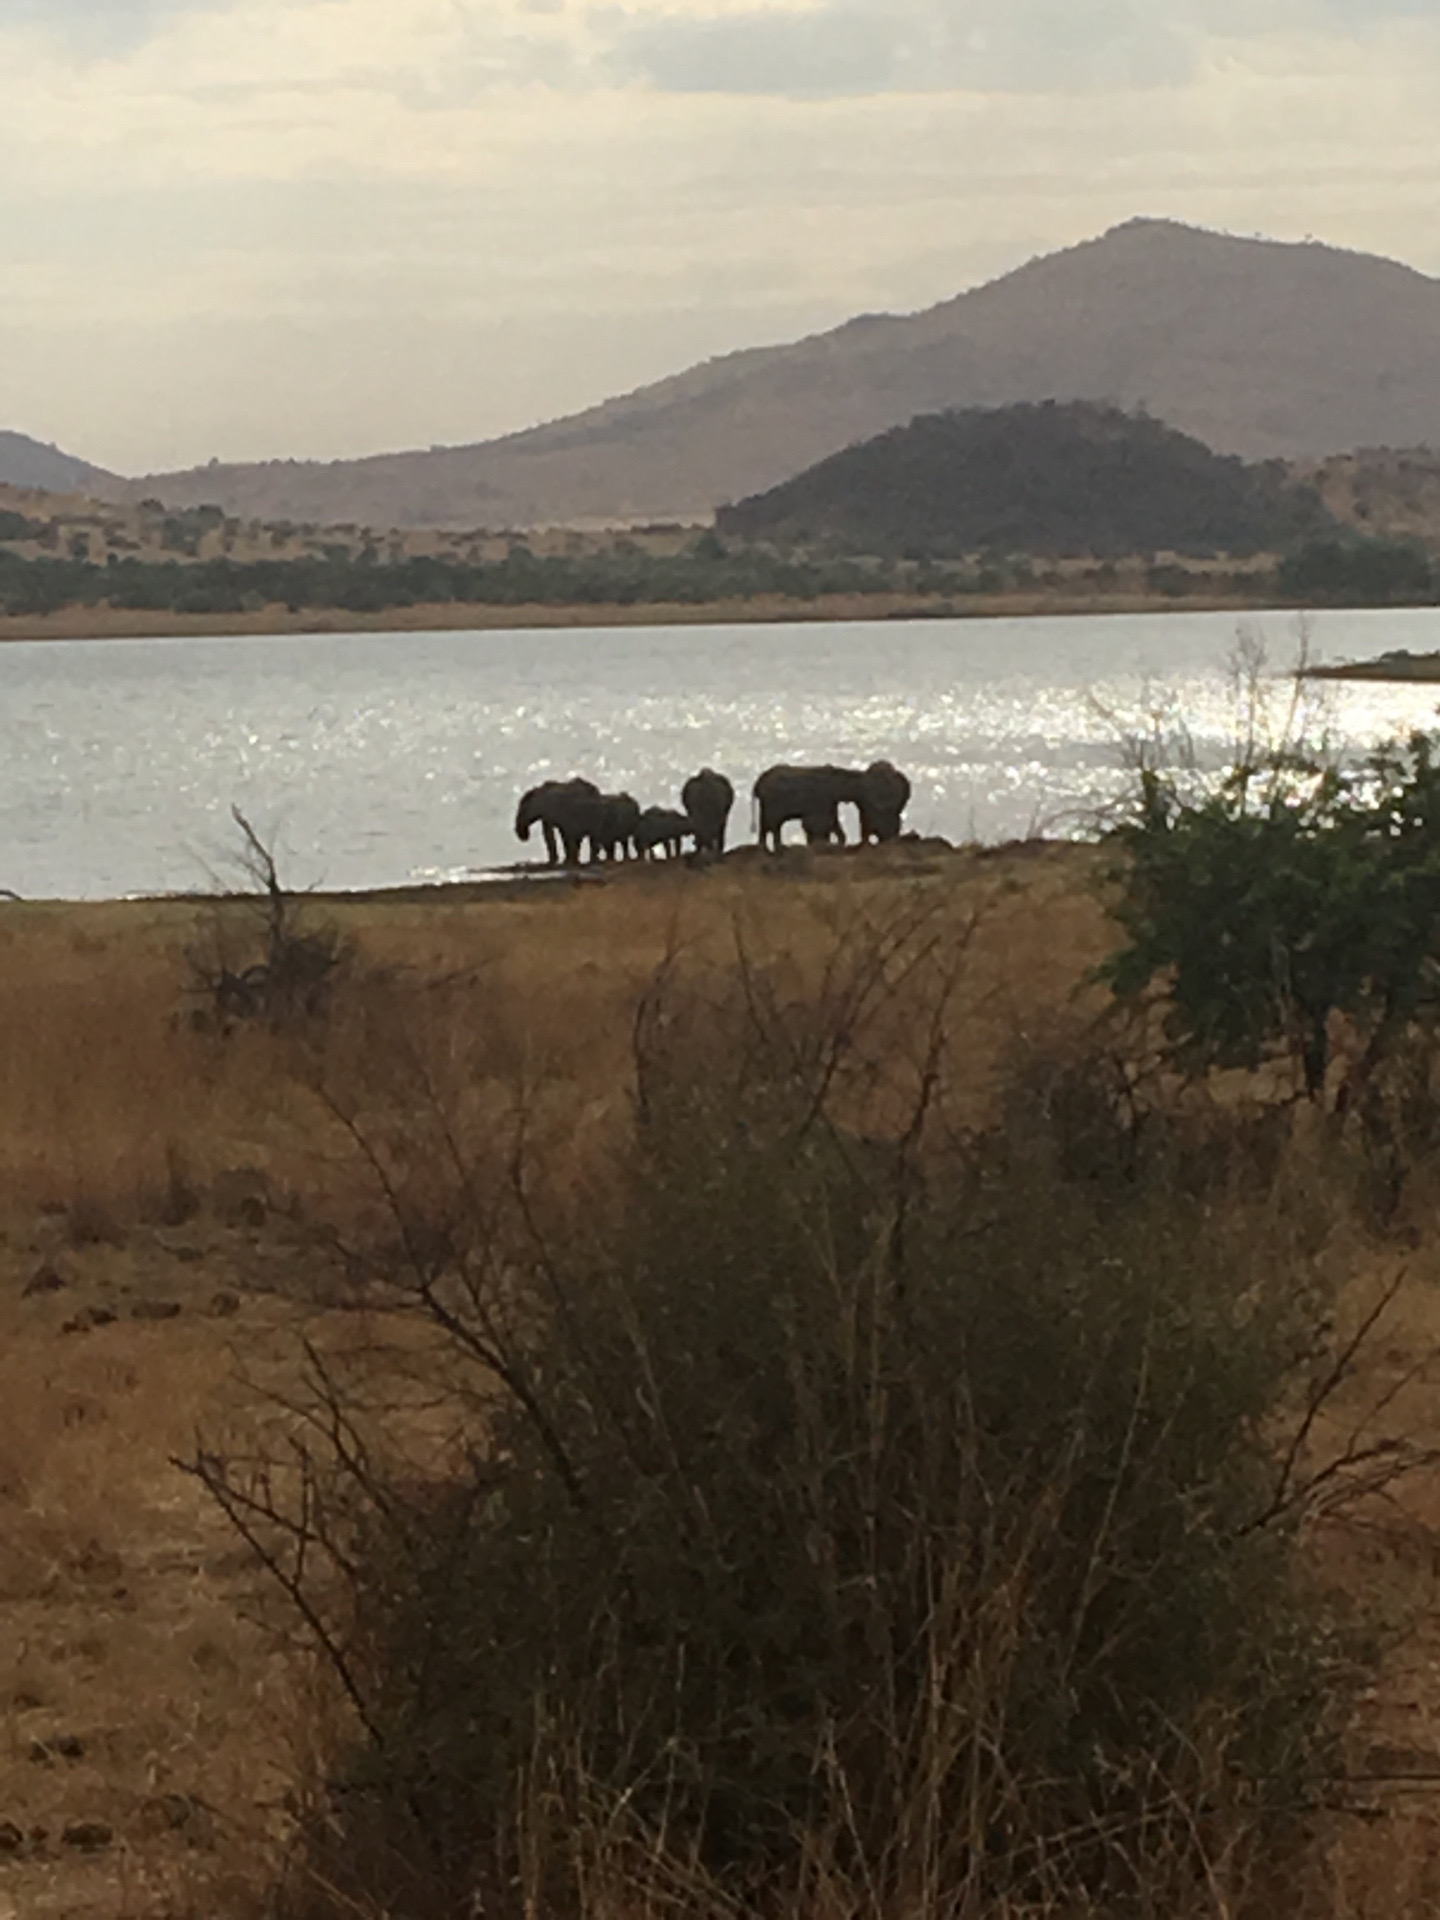 干燥的非洲大地难得的水源地，象群聚集在湖畔饮水。